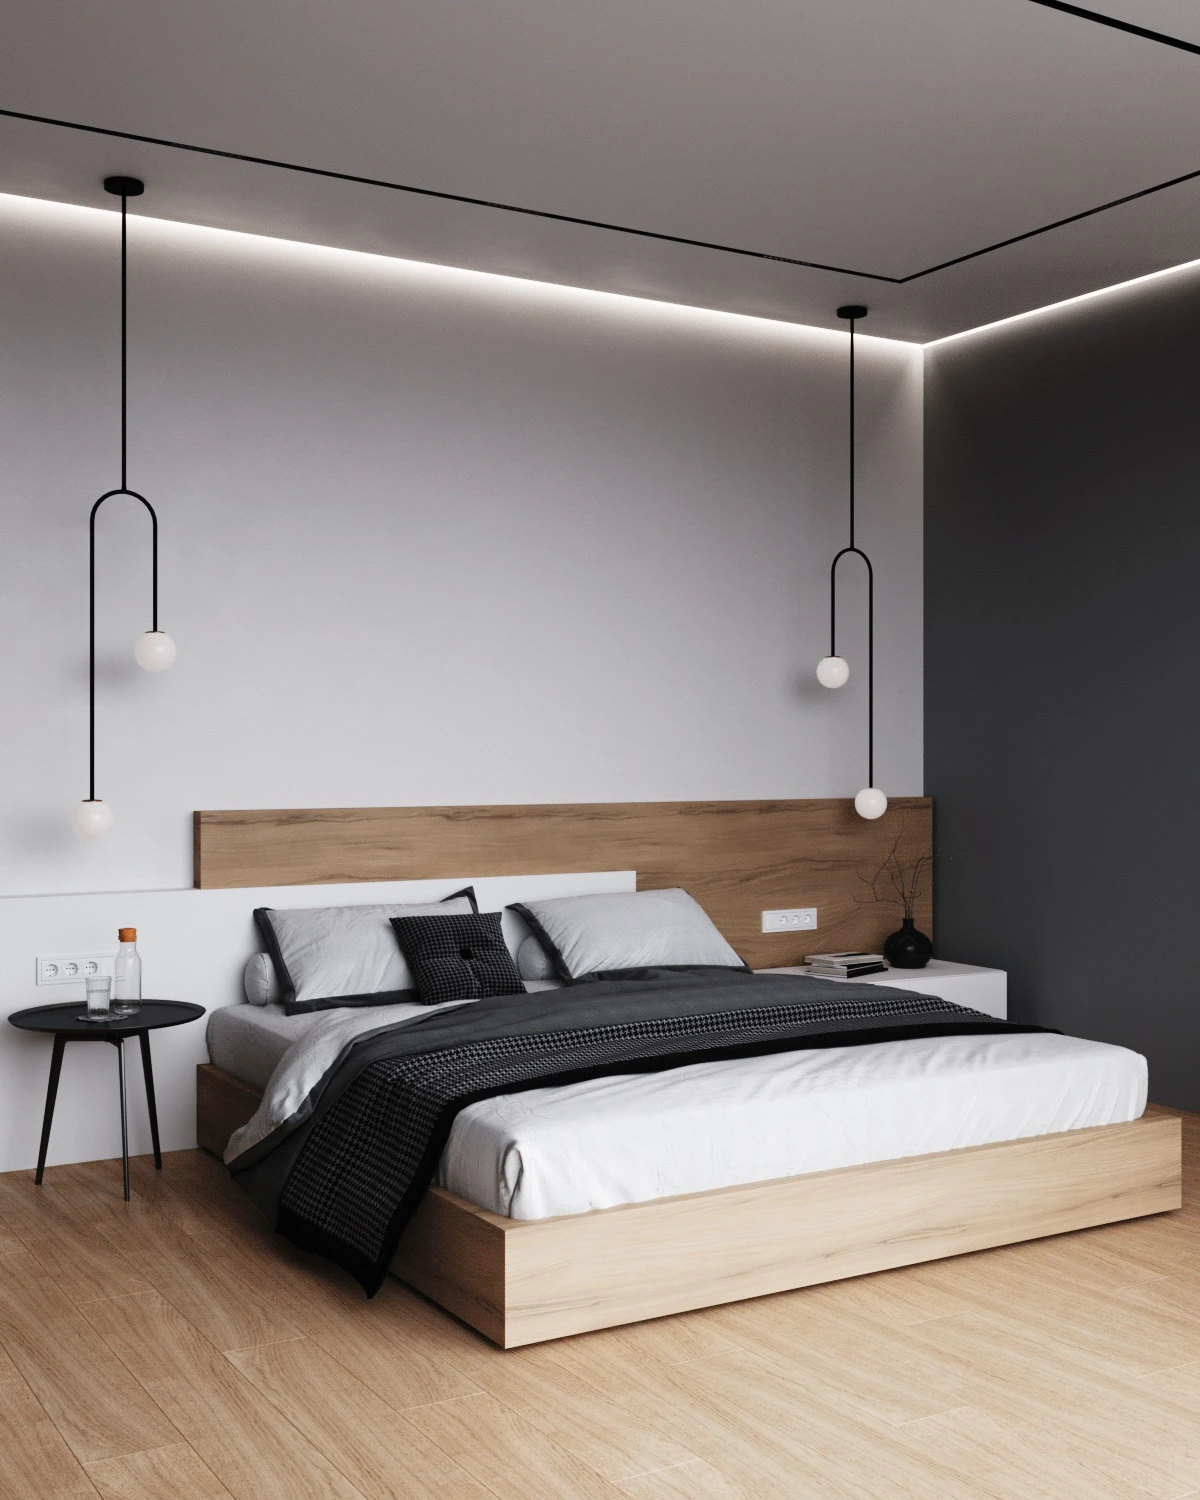 Tự trang trí phòng ngủ có thể giúp bạn tiết kiệm một khoản chi phí